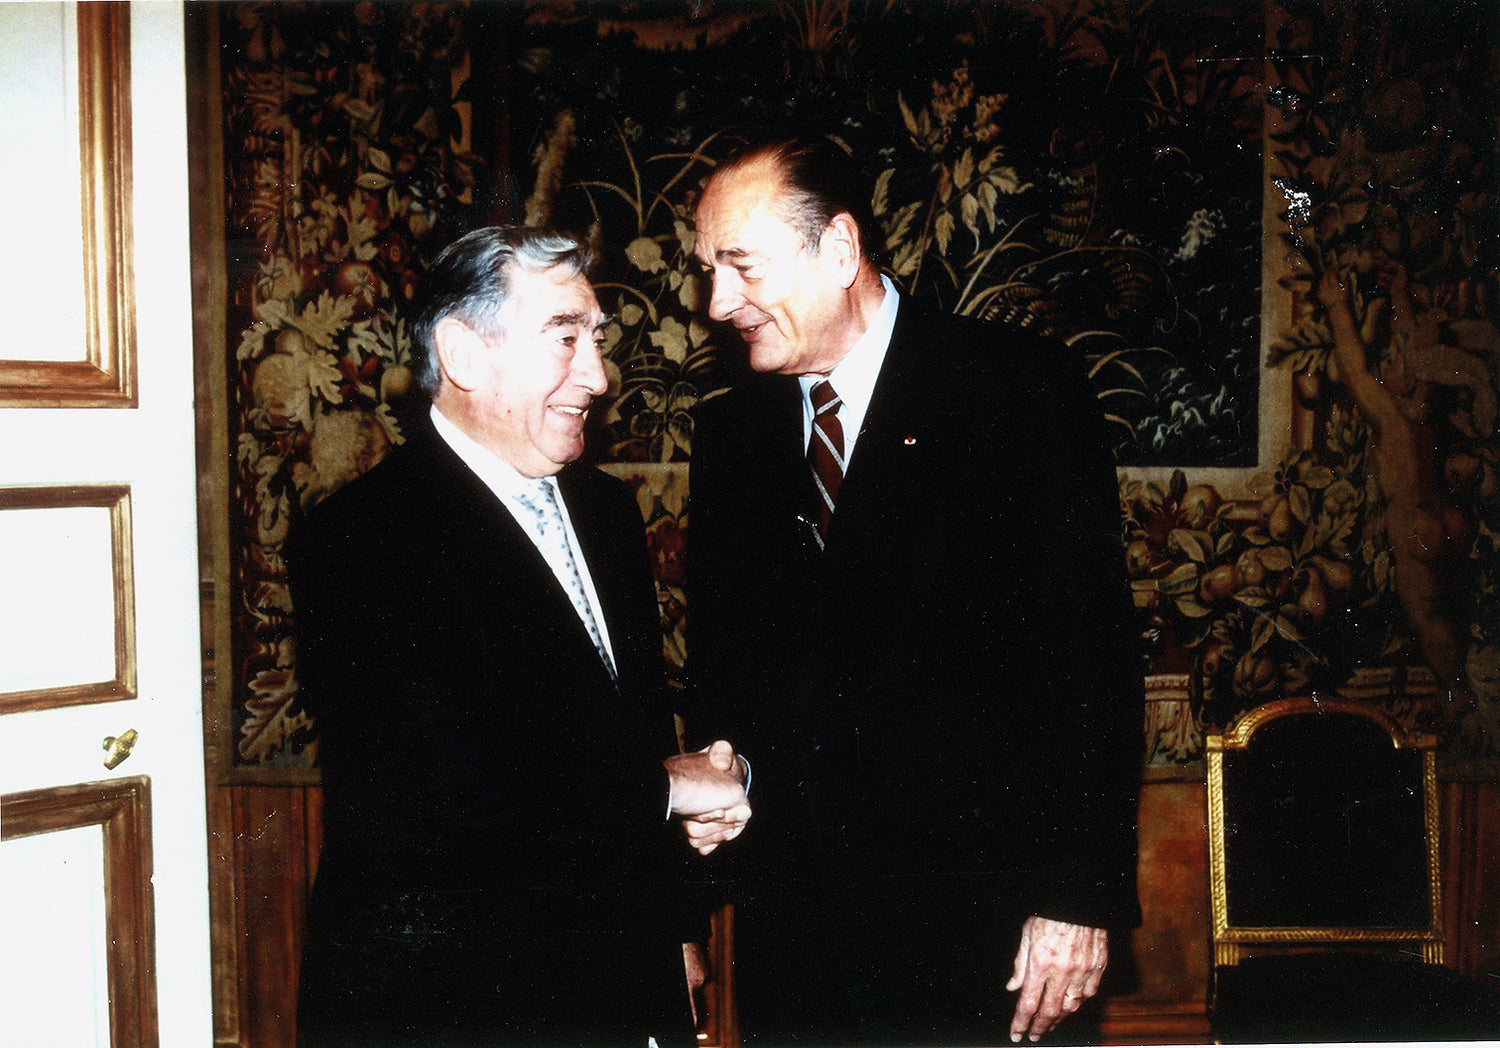 Michel Adrien en compagnie de Jacques Chirac, président de la république française, le 27 Novembre 2002